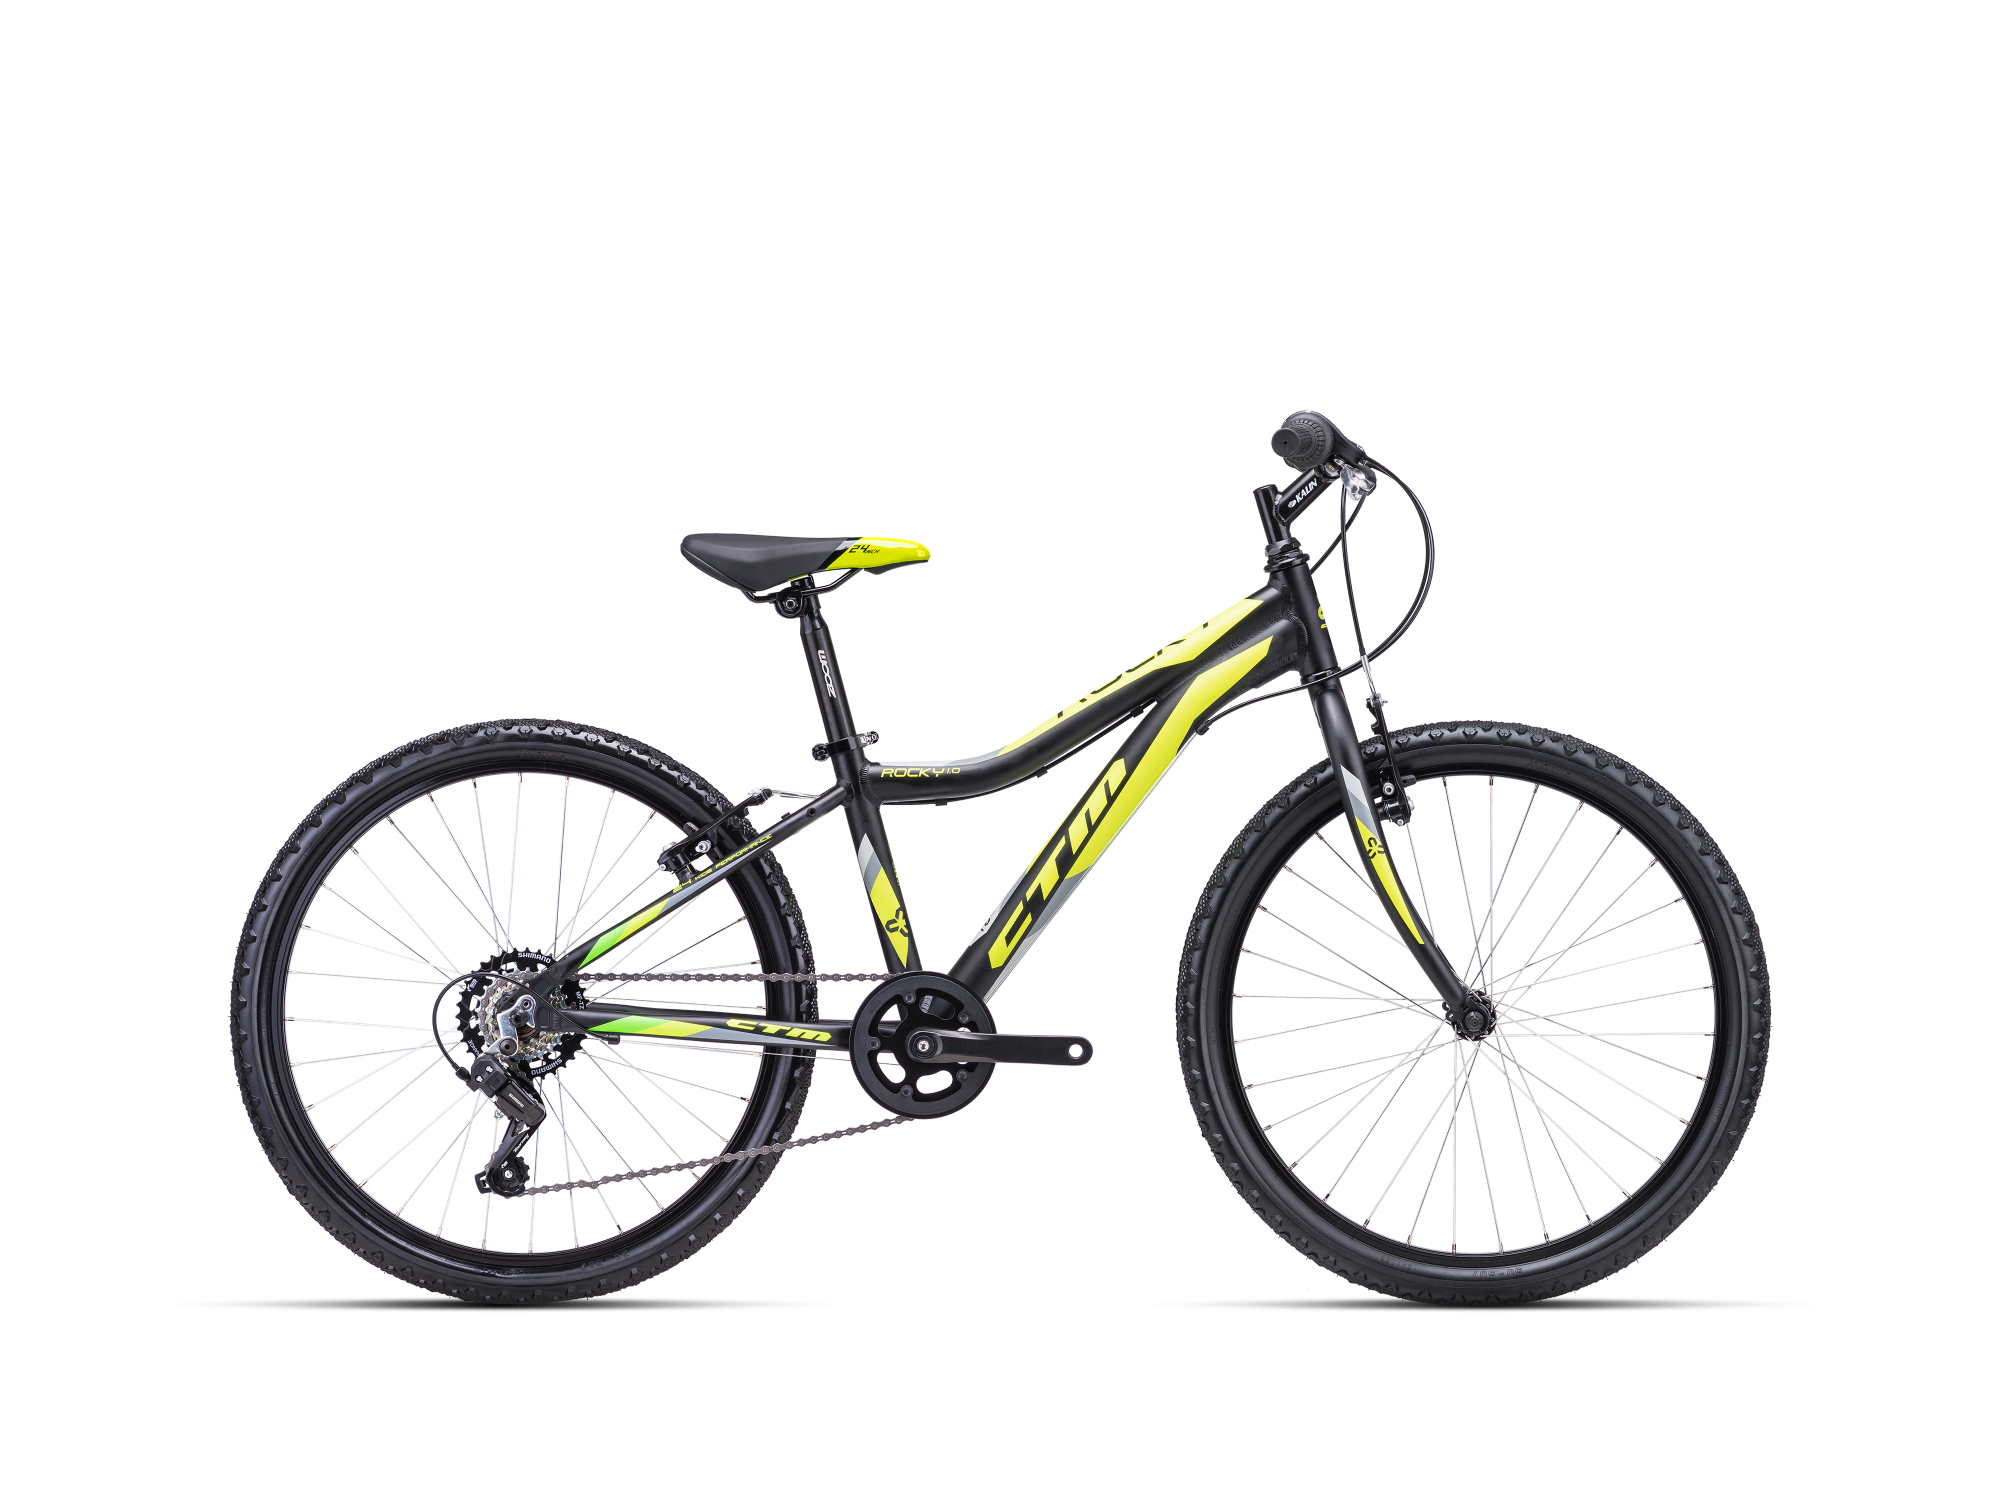 Dječji bicikl CTM Rocky 1.0 crno žute boje namijenjen dječacima i djevojčicama, sa 24'' kotačima, brzinama i mjenjačem brzina za vožnju u prirodi ili u gradu